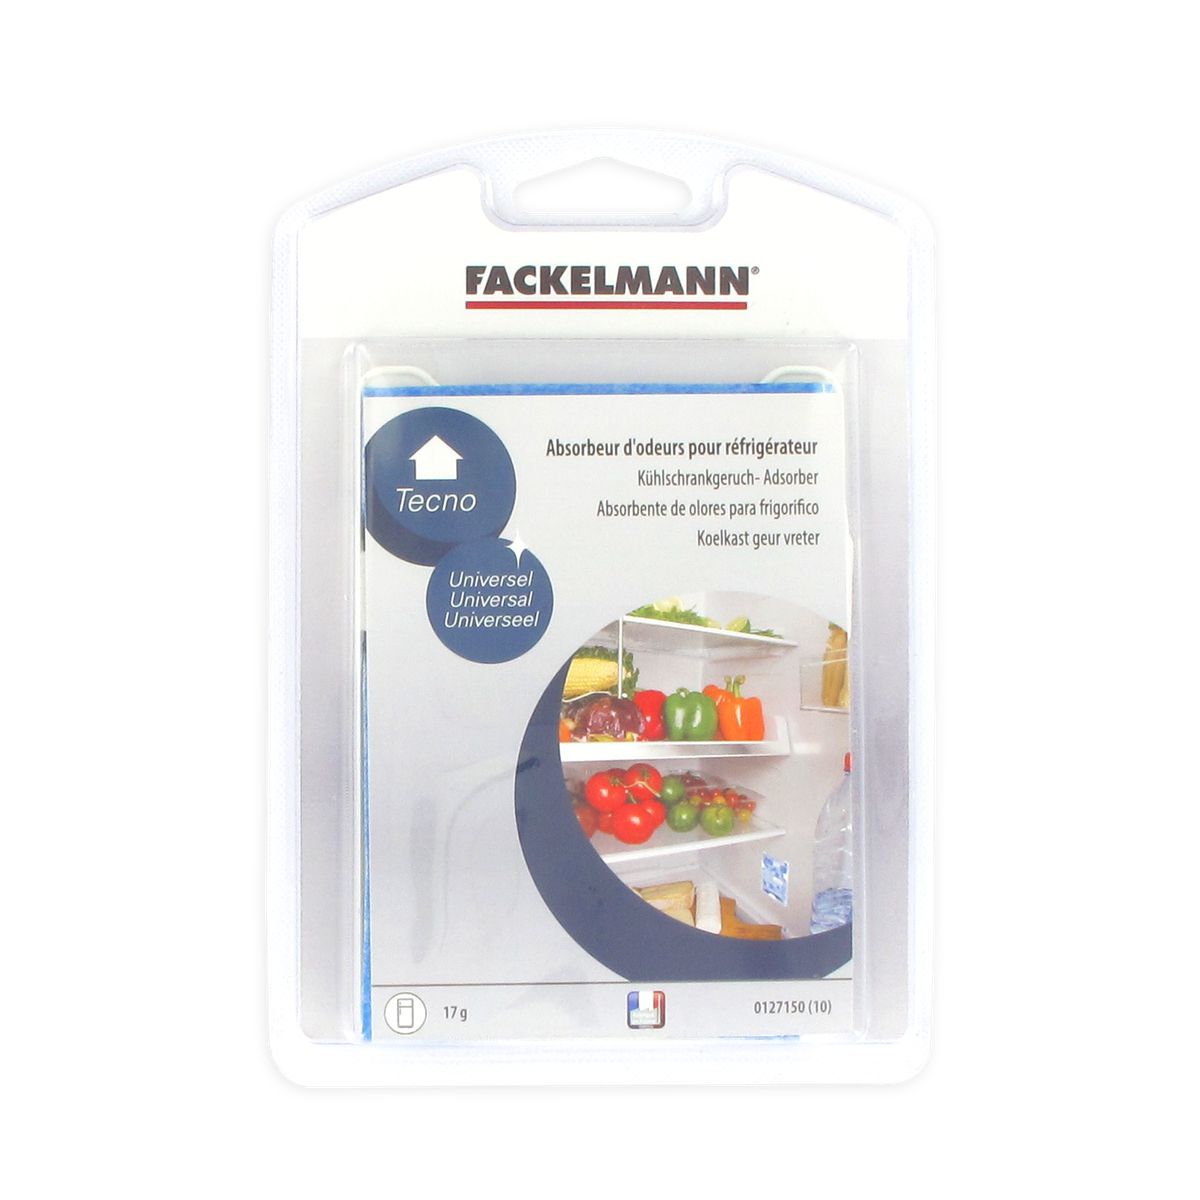 Absorbeur d'odeurs pour réfrigérateur au charbon actif Fackelmann